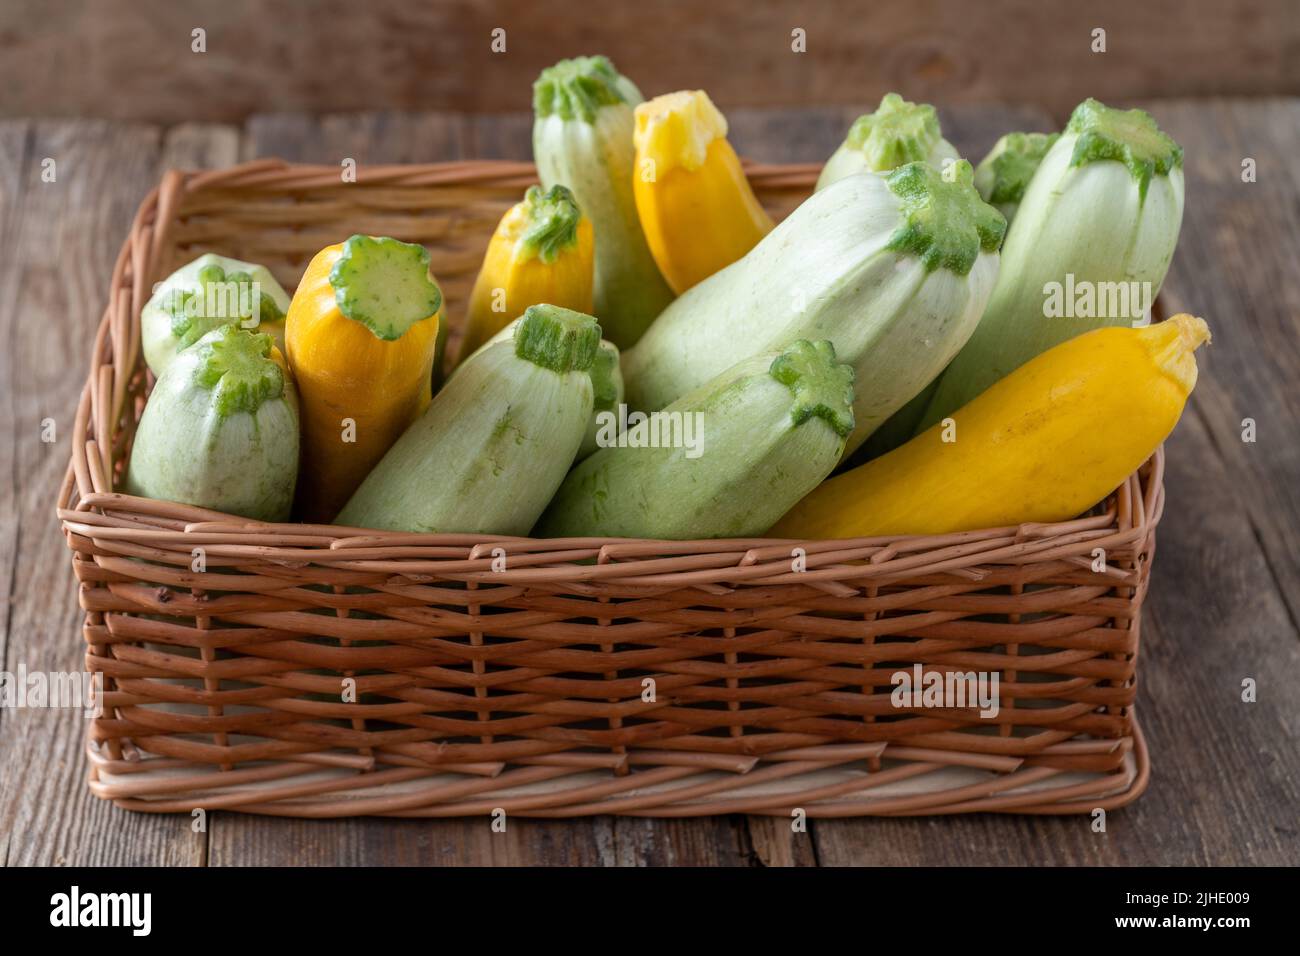 Zucchine multicolore gialle, verdi, bianche, arancioni sul tavolo in legno in primo piano. Sfondo alimentare. Zucchine fresche raccolte in cestino, zucca estiva tagliata. Zucchine verdi selezionate. Foto Stock